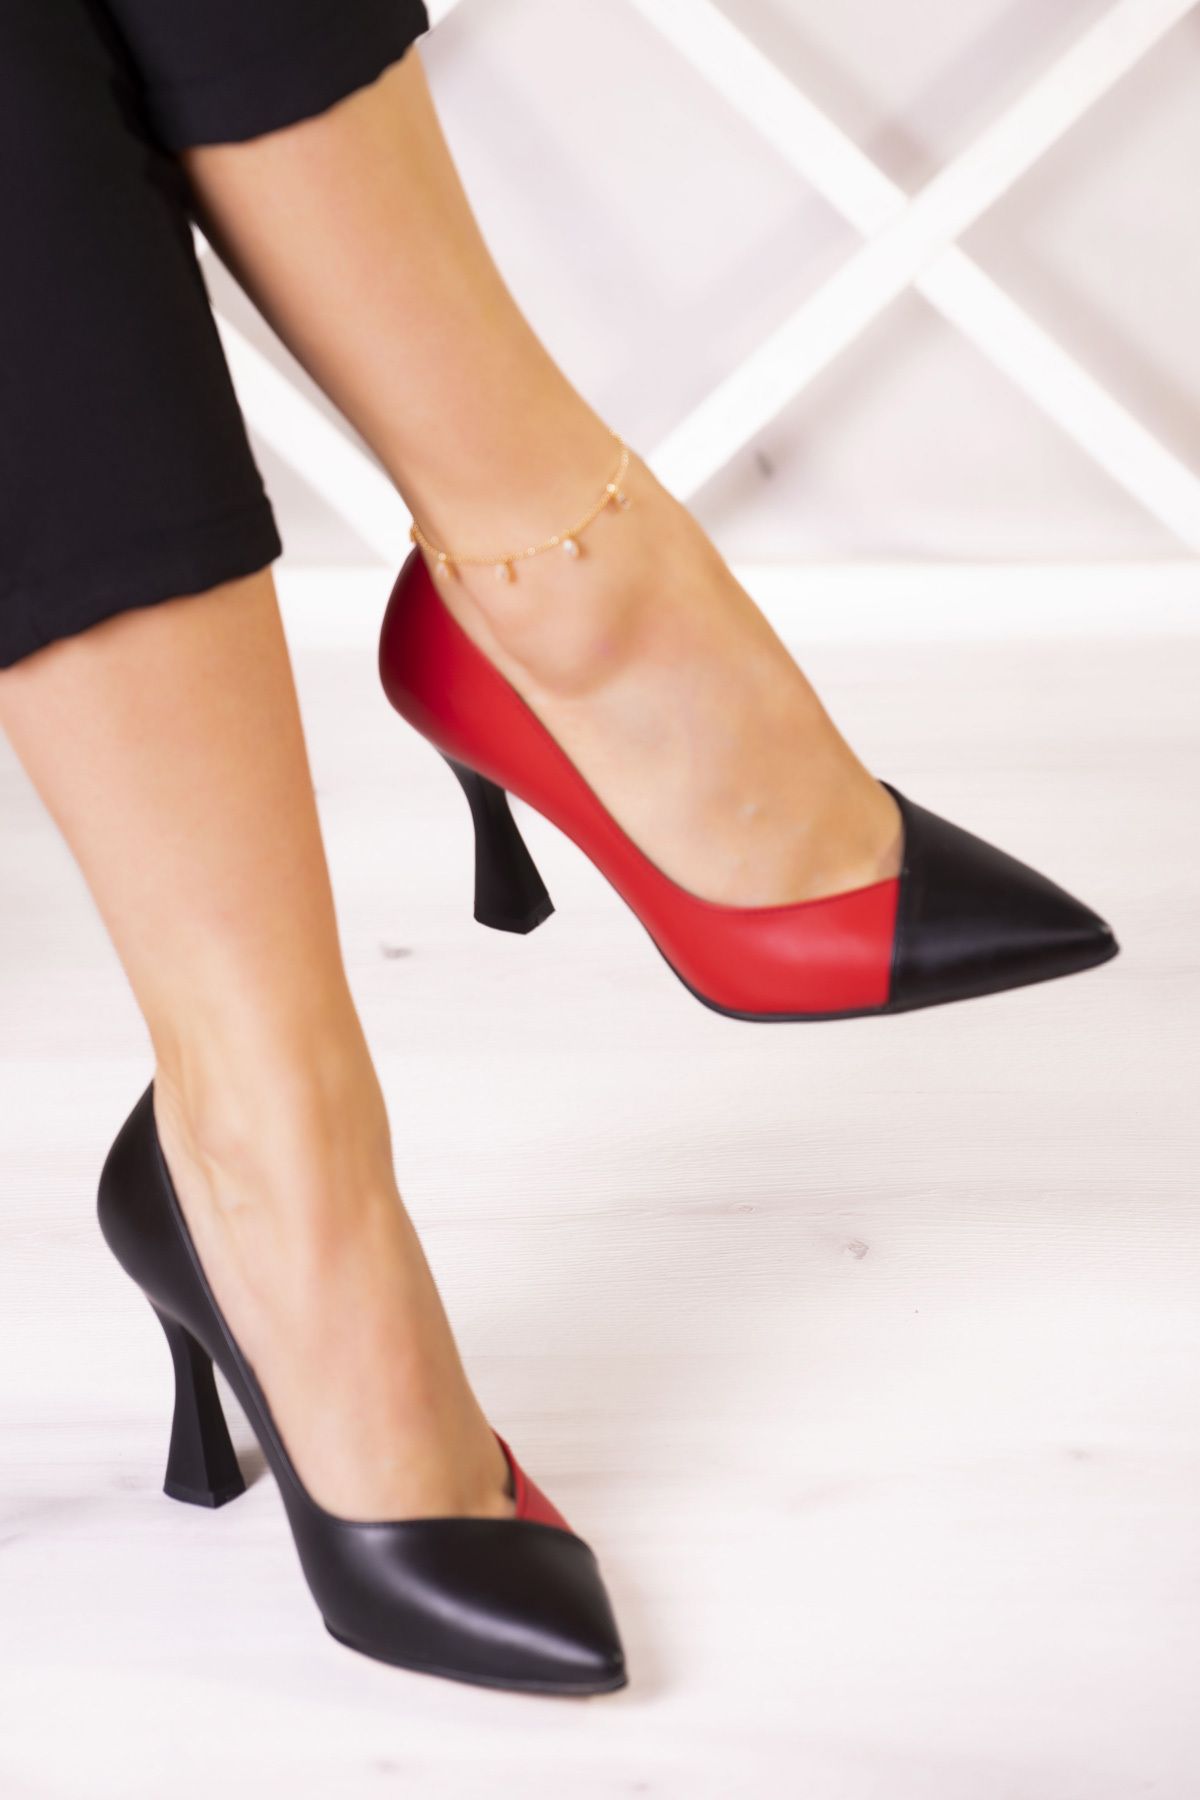 Erkan Saçmacı Jatqılı Plus Siyah Kırmızı Vegan Kadeh Topuklu Ayakkabı 9 Cm.